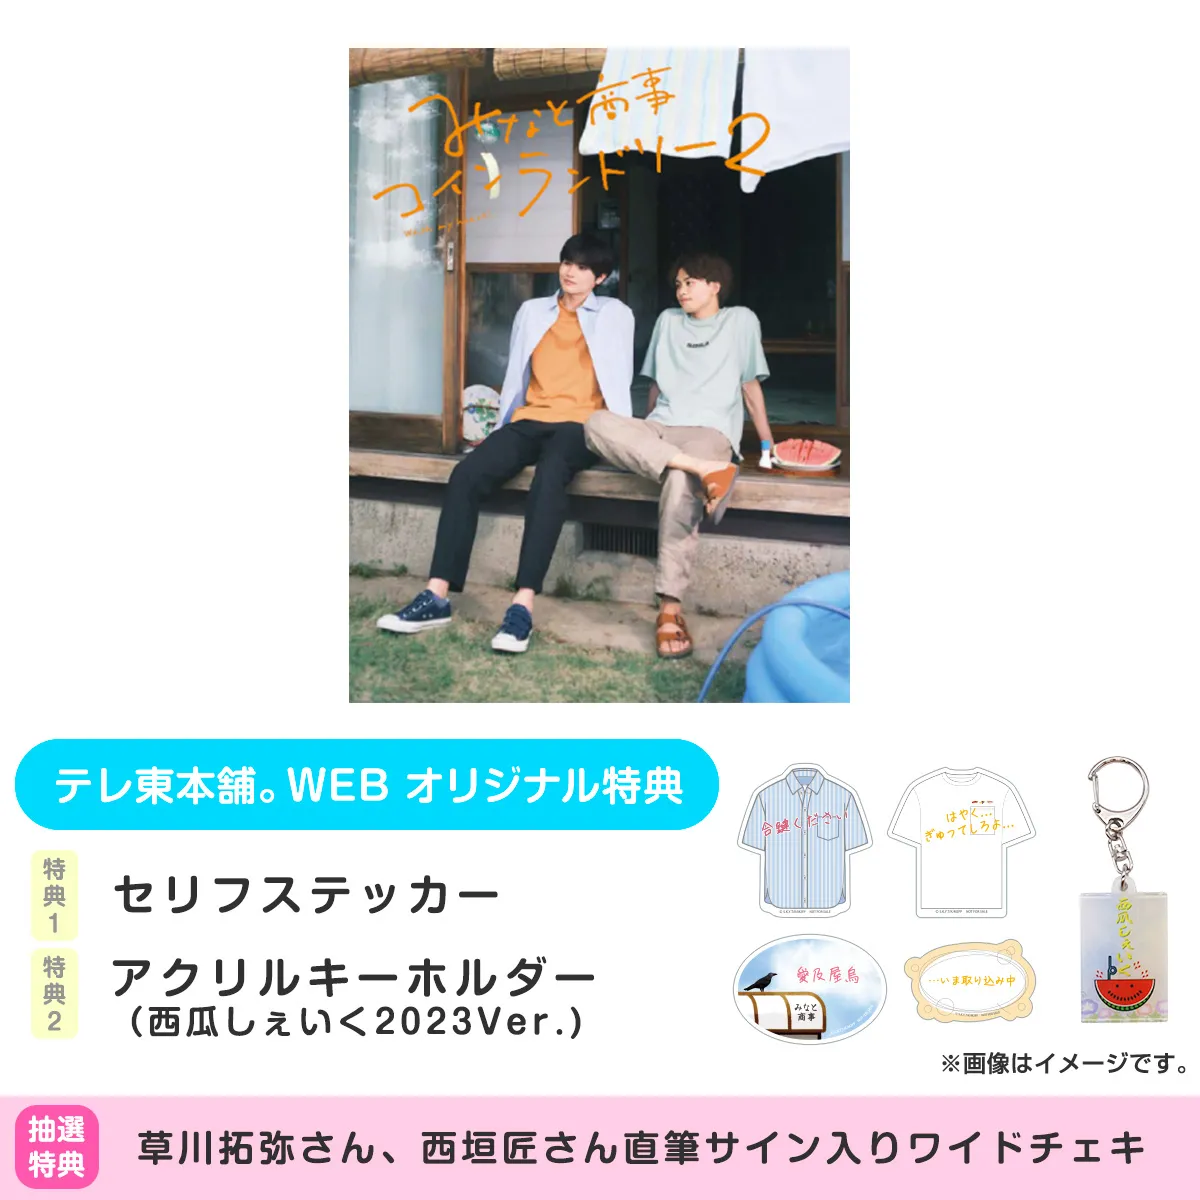 みなと商事コインランドリー2 DVD-BOX〈4枚組〉